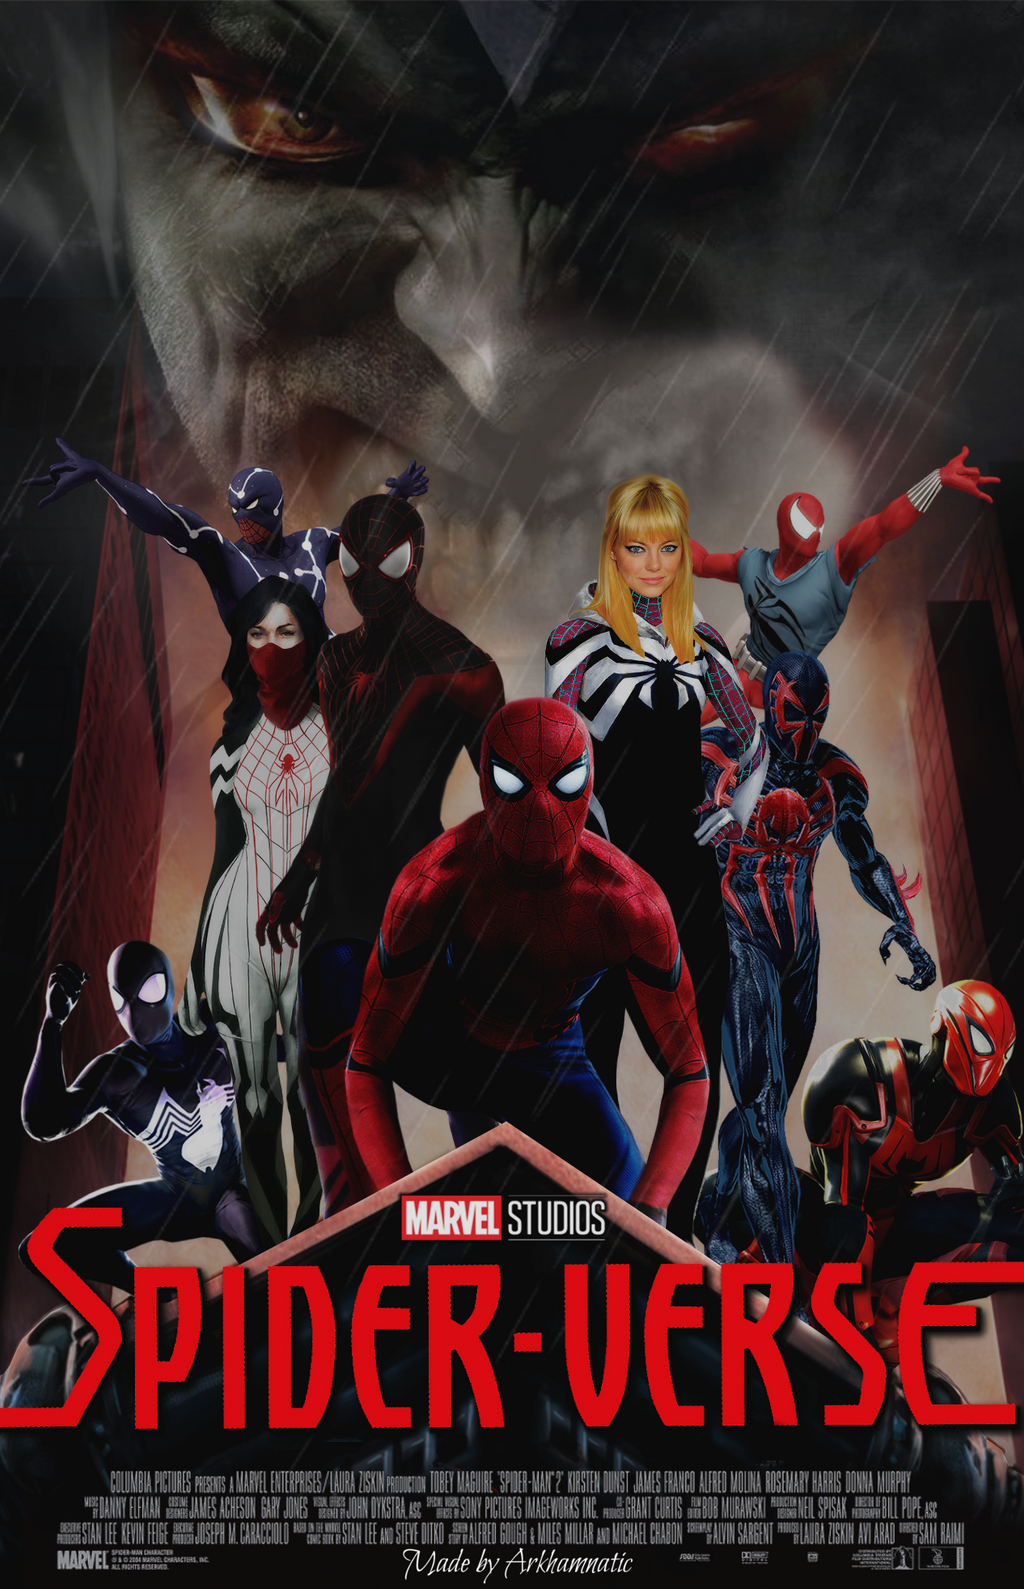 Spider-verse movie poster by ArkhamNatic on DeviantArt